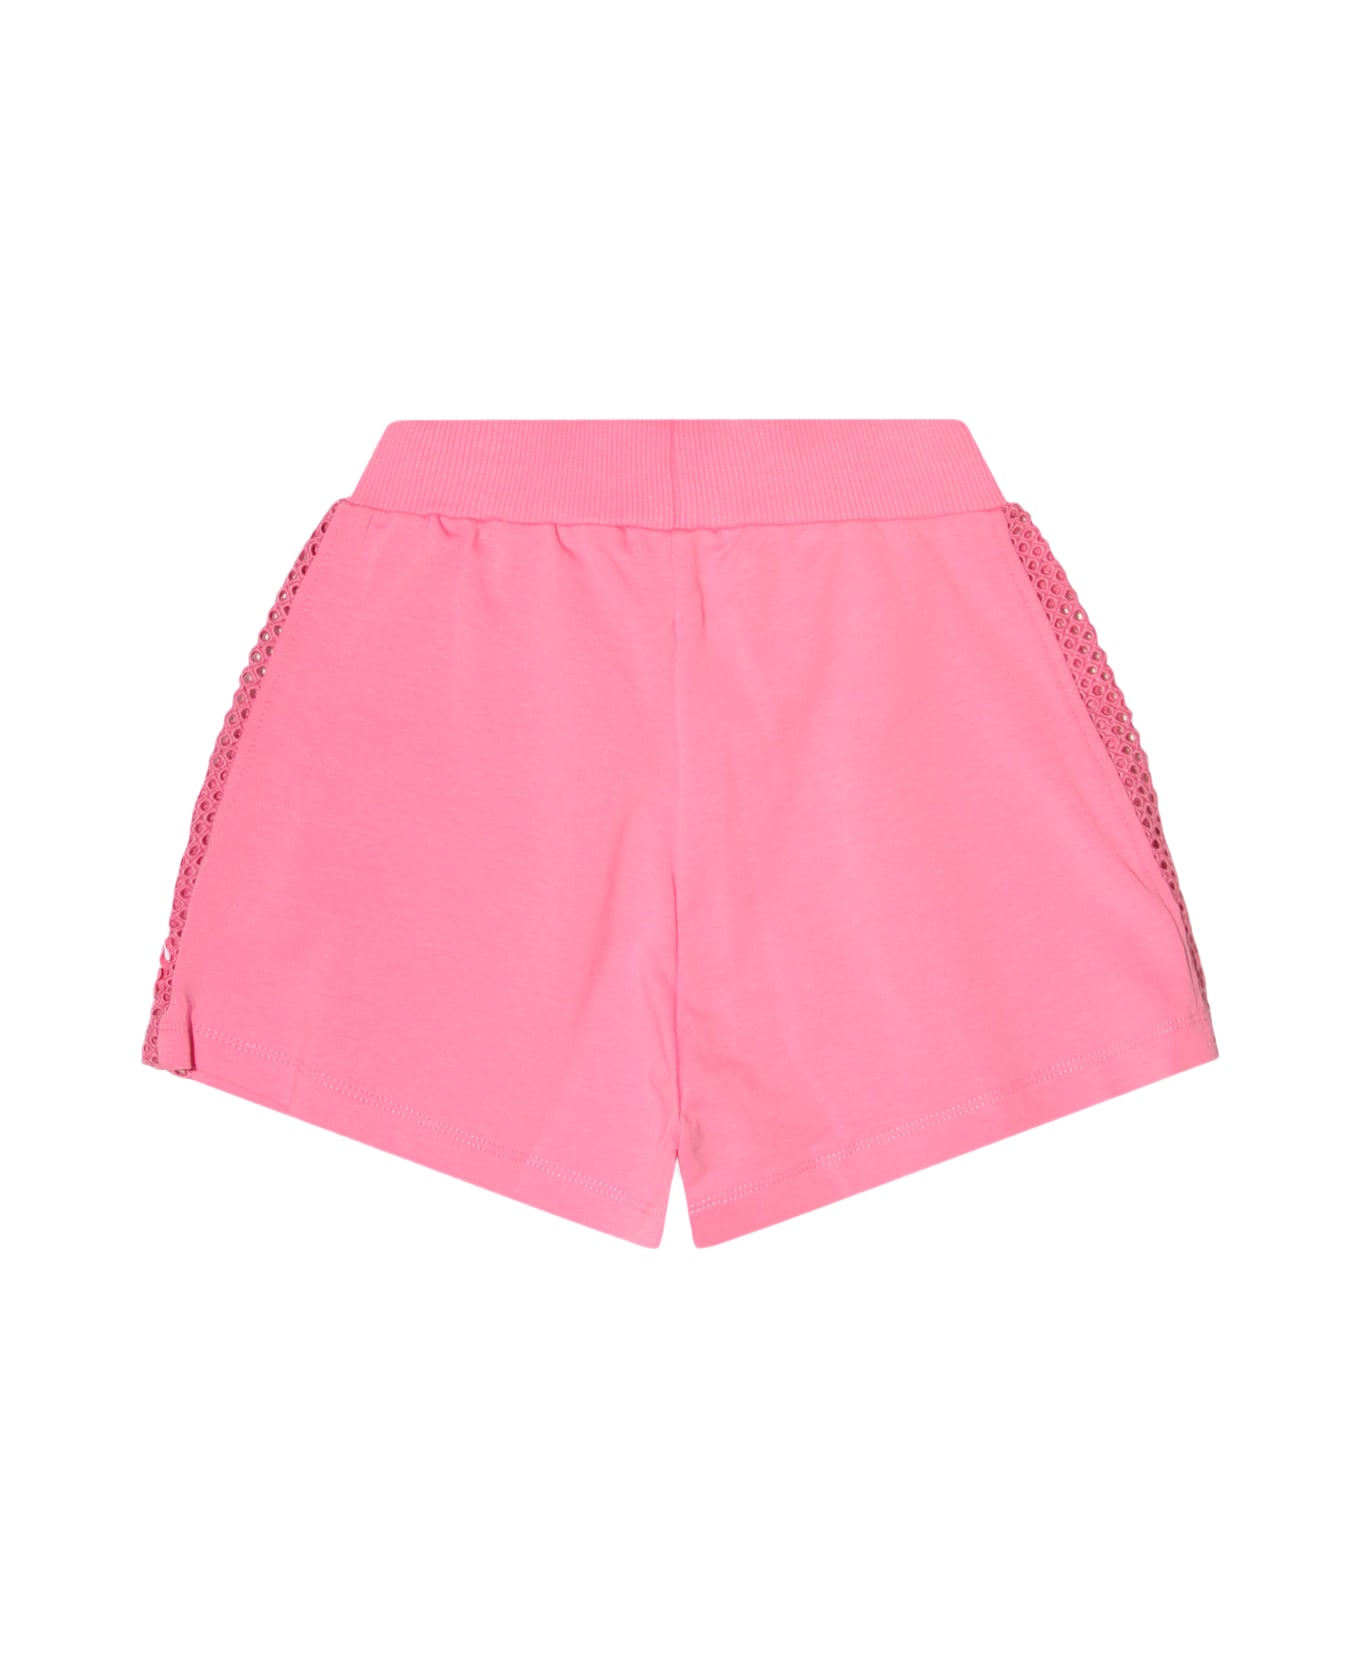 Monnalisa Pink Peach Cotton Shorts - Rosa Peach